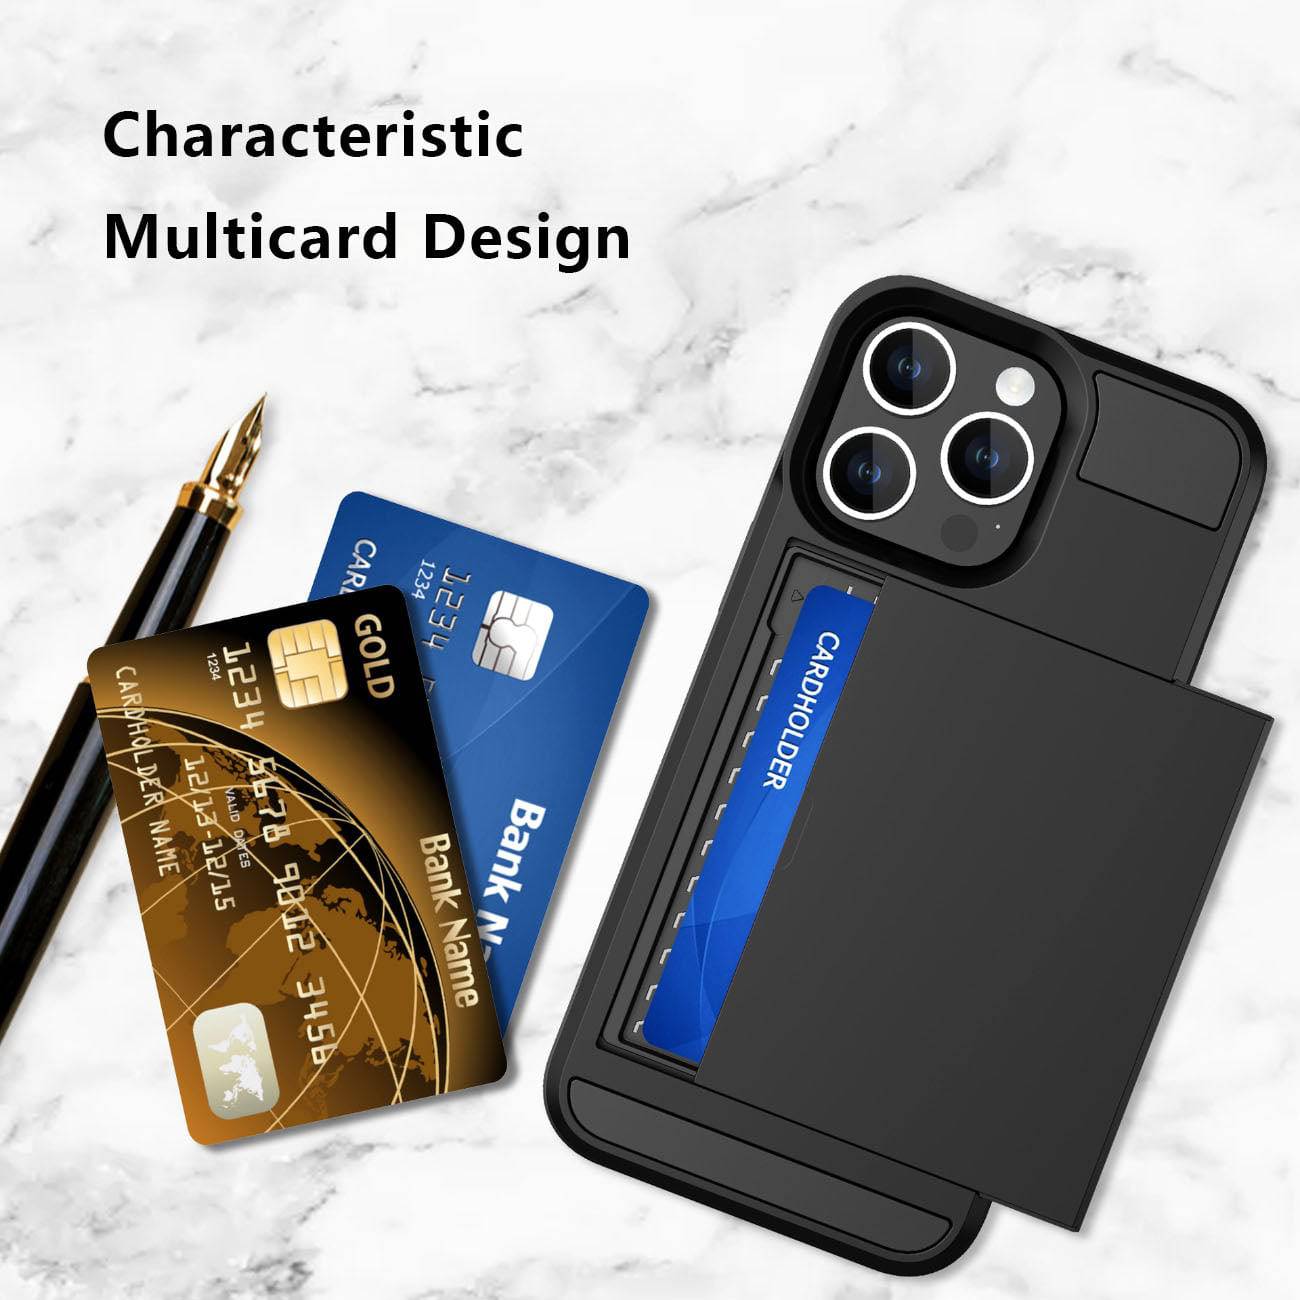 iPhone Wallet Case - Stilvolle und praktische Handyhülle